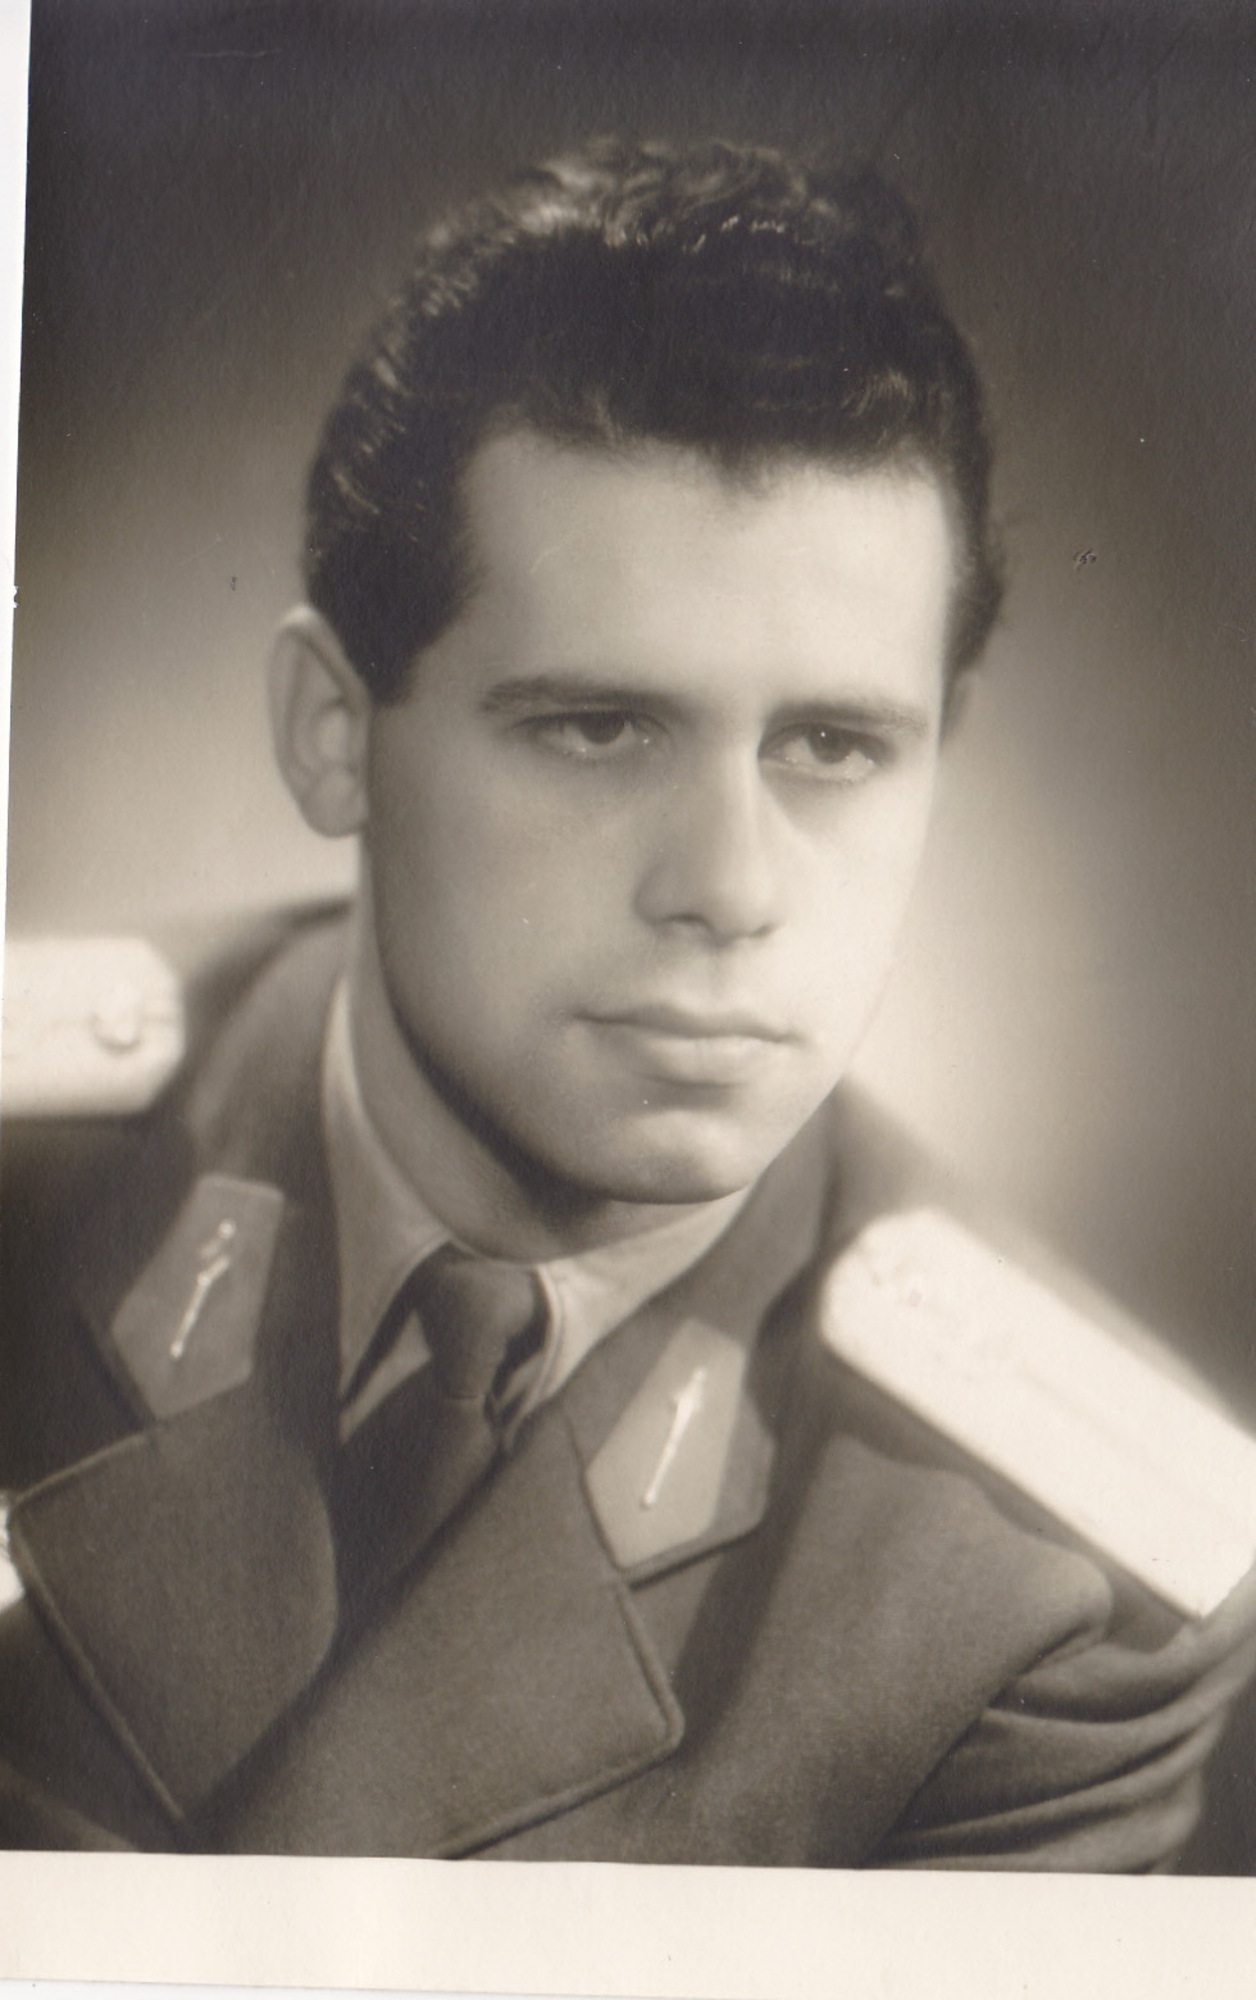 Oldřich Hukal in his lieutenant uniform, 1959